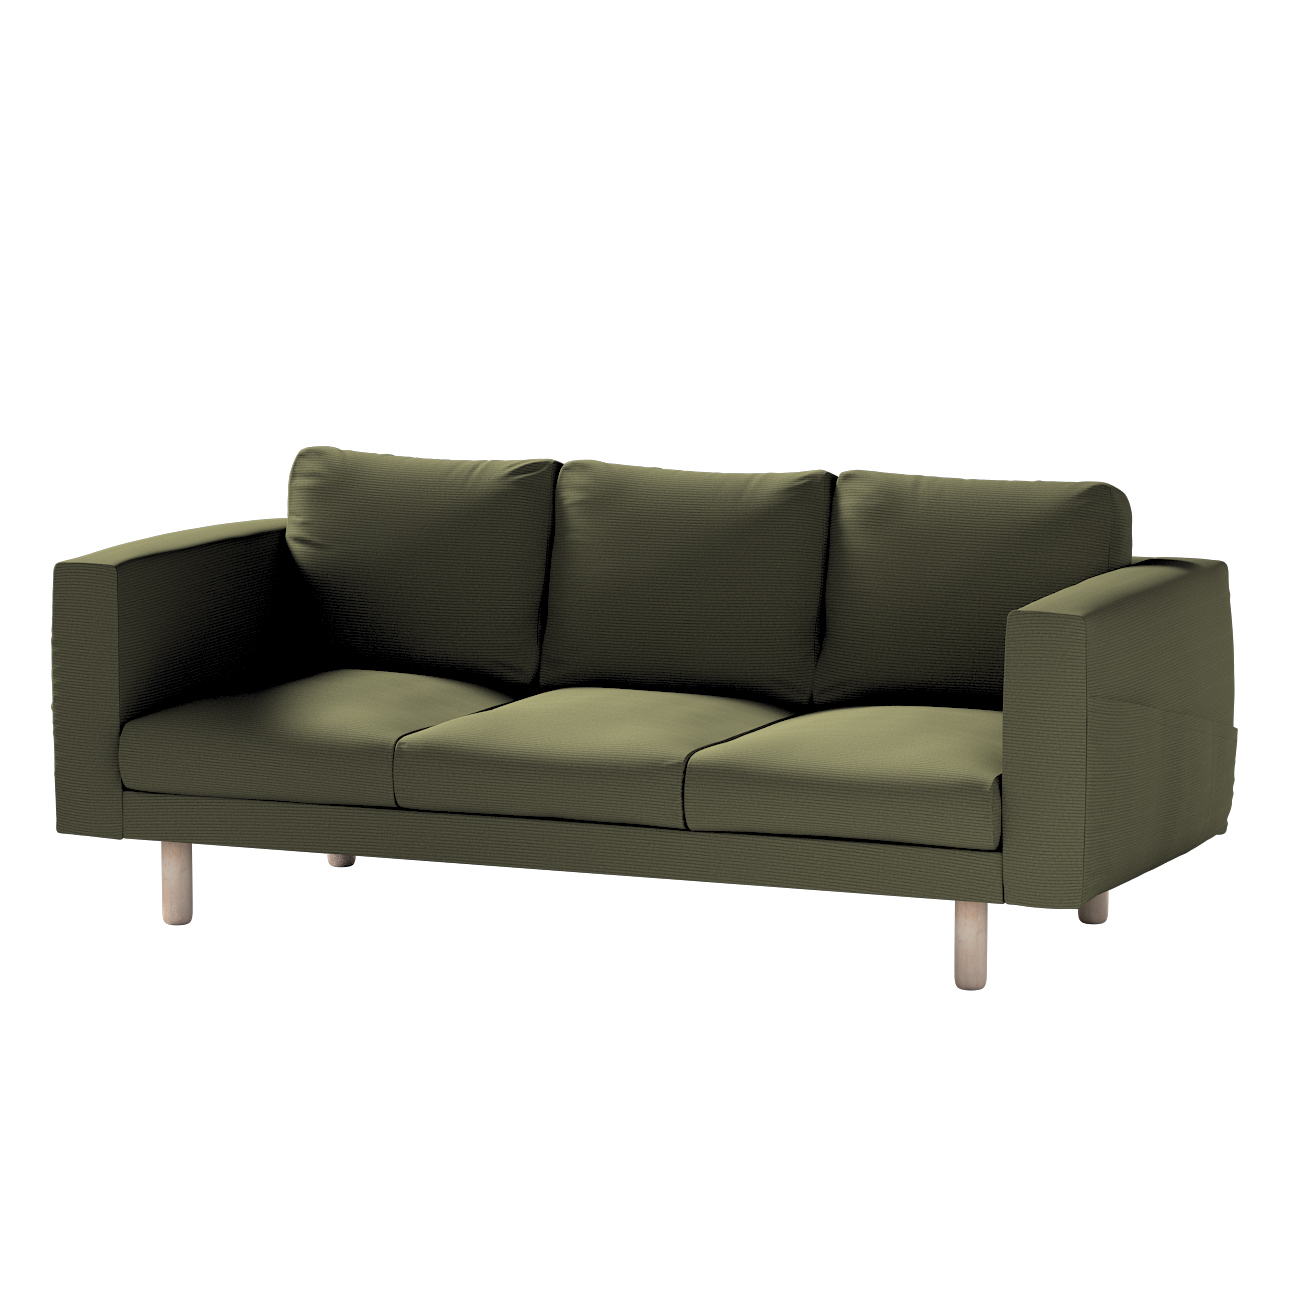 Bezug für Norsborg 3-Sitzer Sofa, olivgrün, Norsborg 3-Sitzer Sofabezug, Ma günstig online kaufen